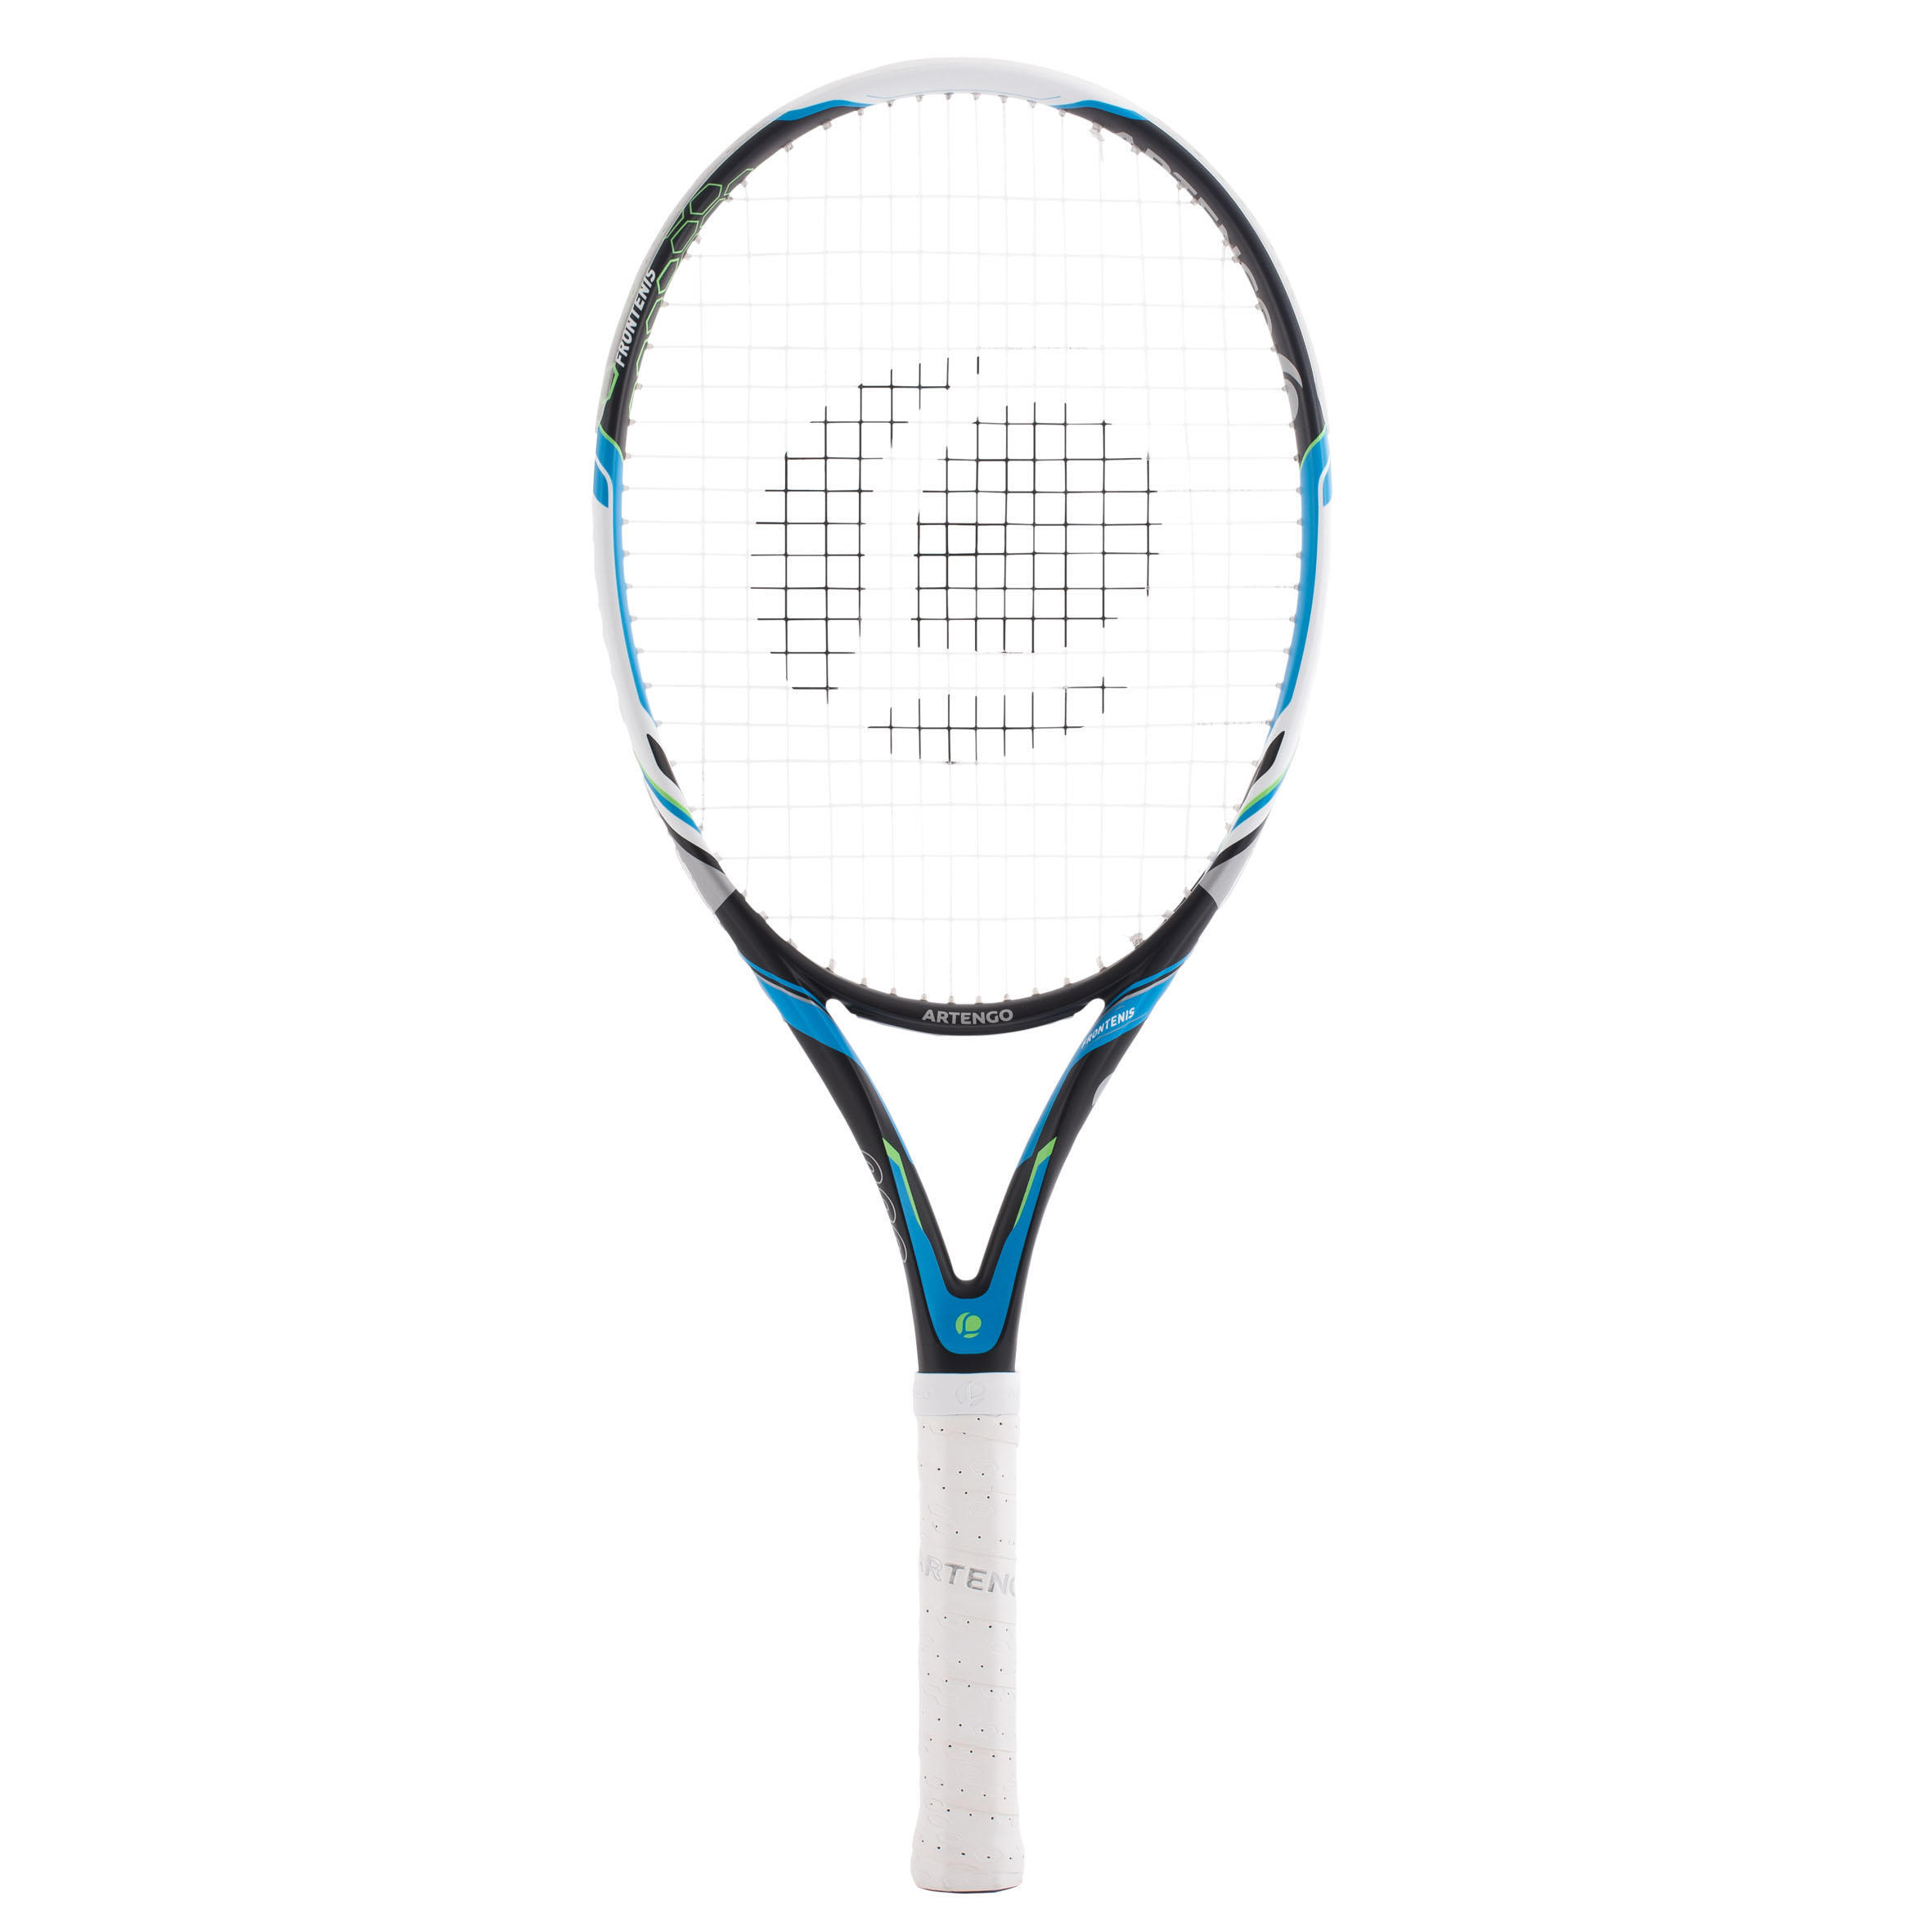 Передняя теннисная ракетка FTR 560 URBALL пляжная теннисная ракетка gaivota color series 18k из углеродного волокна матовая пляжная теннисная ракетка с рюкзаком